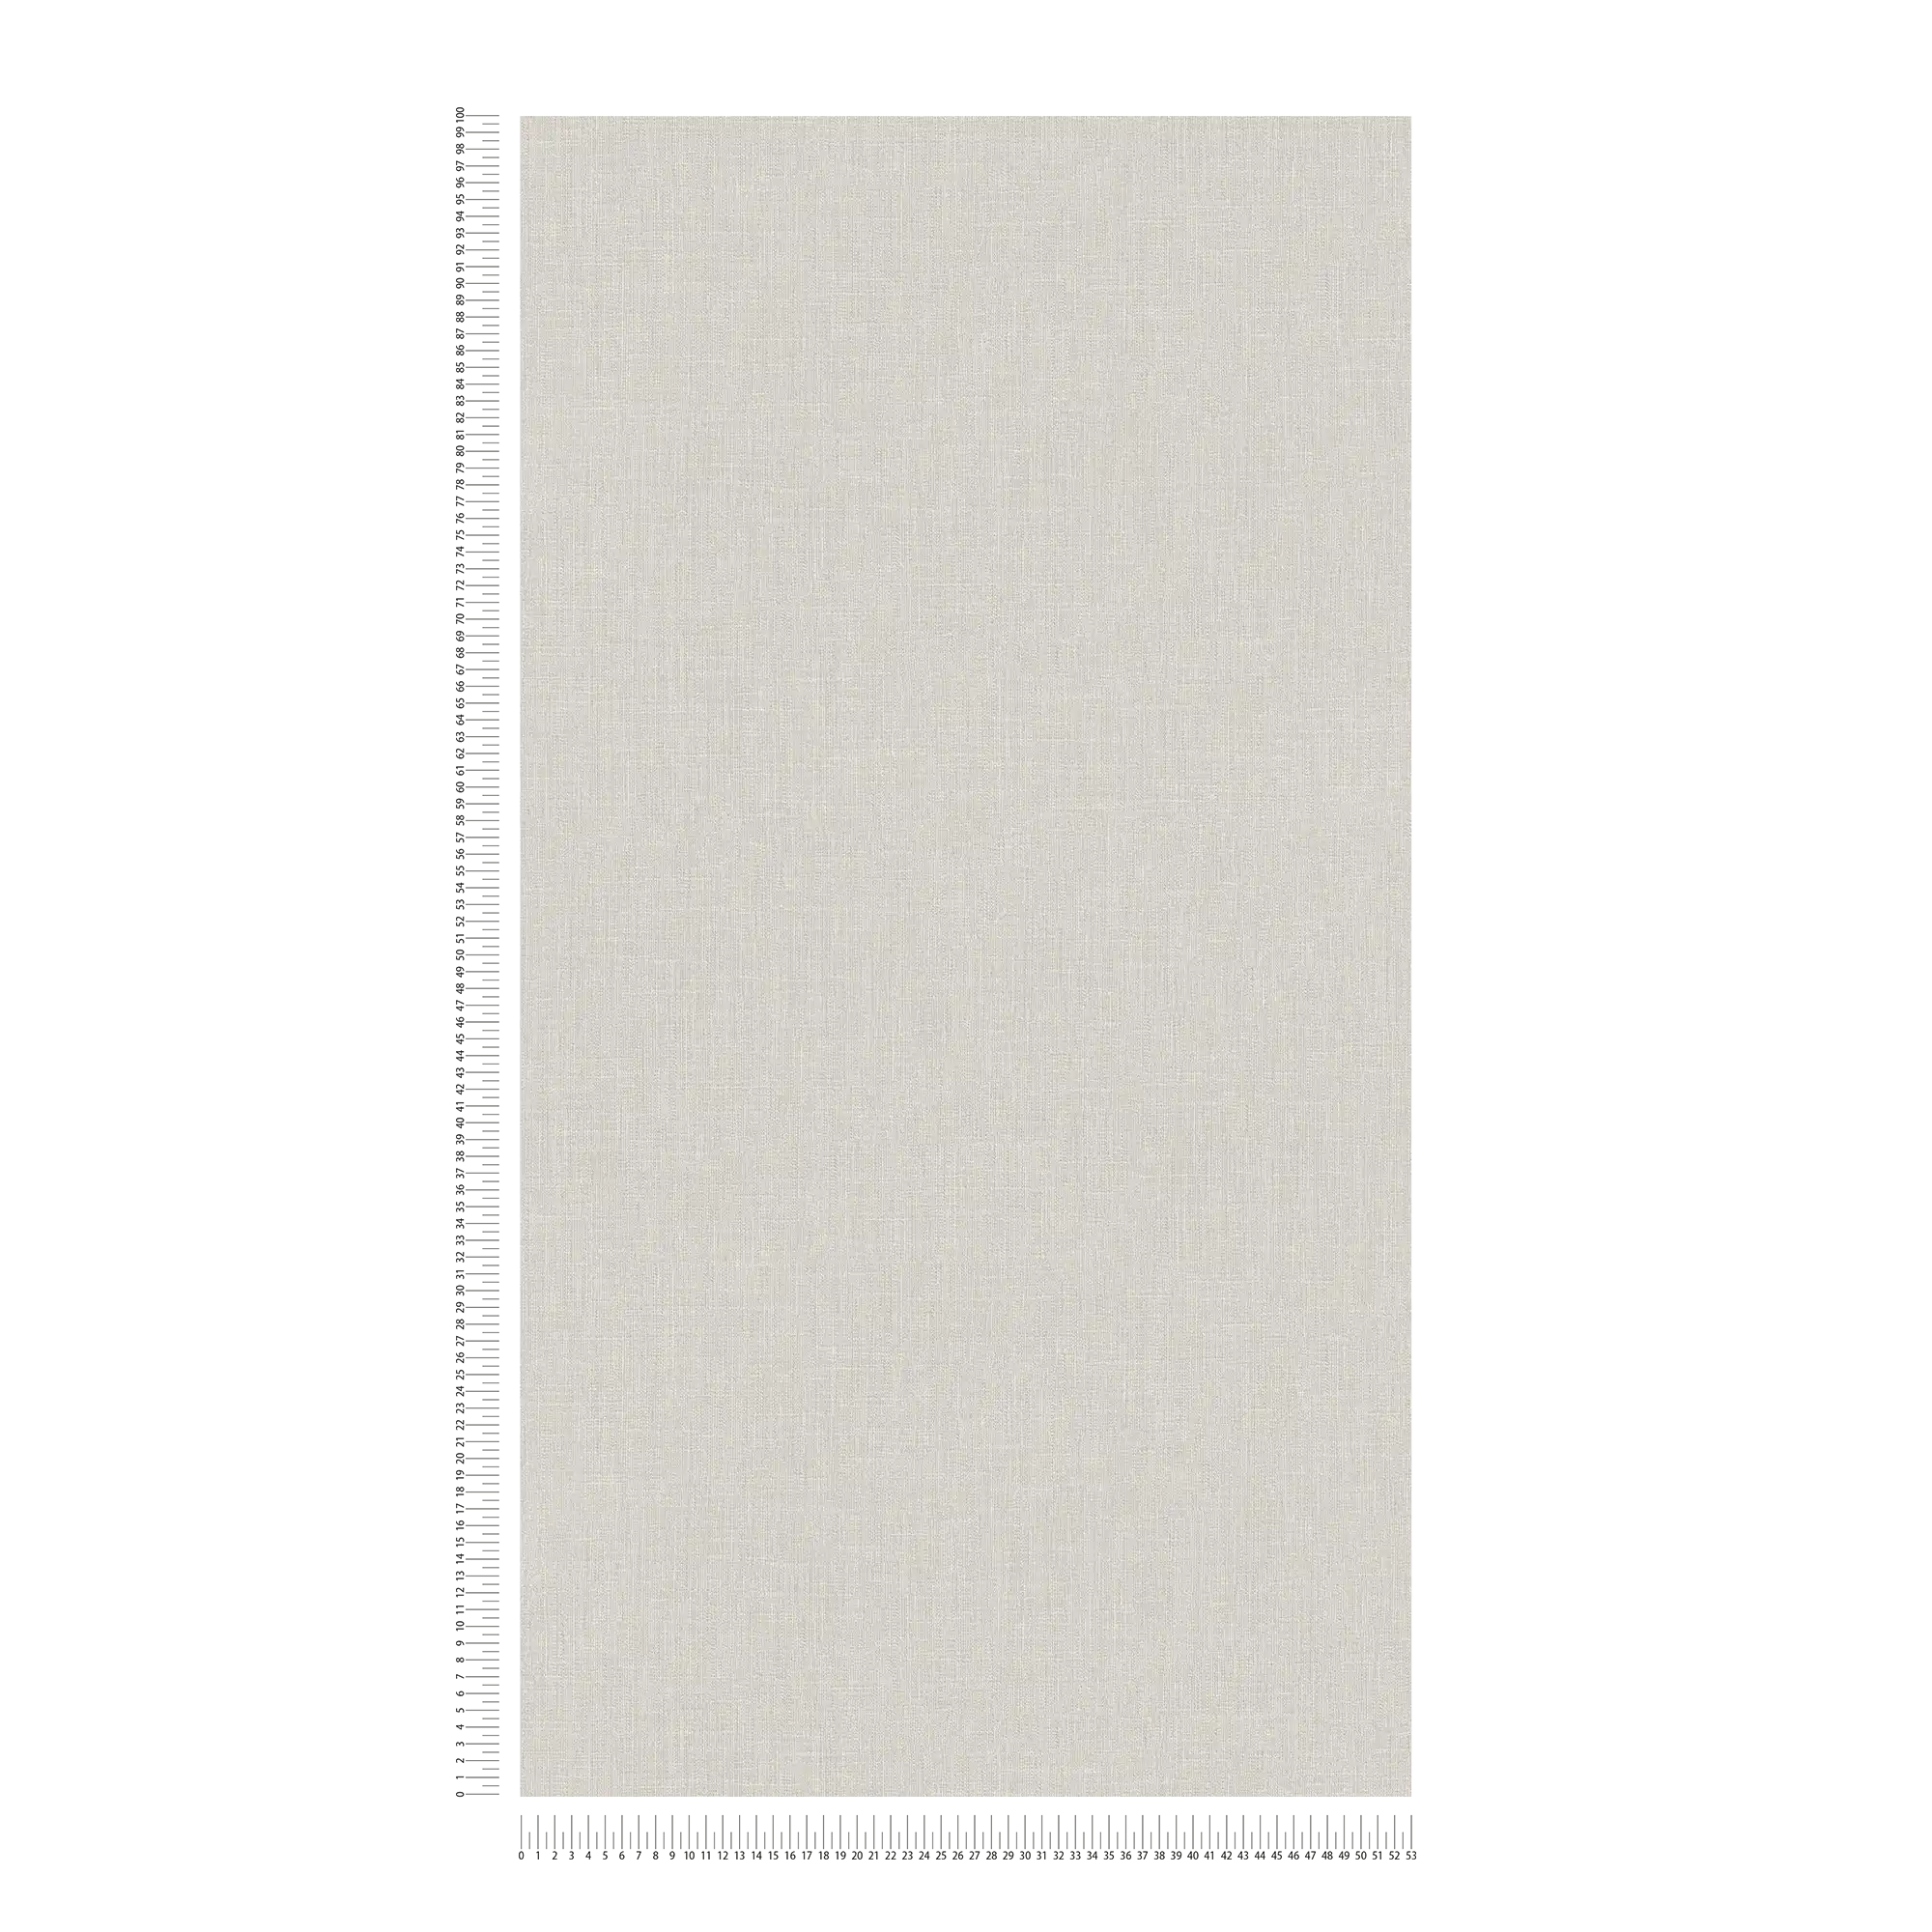             Papier peint intissé gris clair avec aspect textile & motifs structurés
        